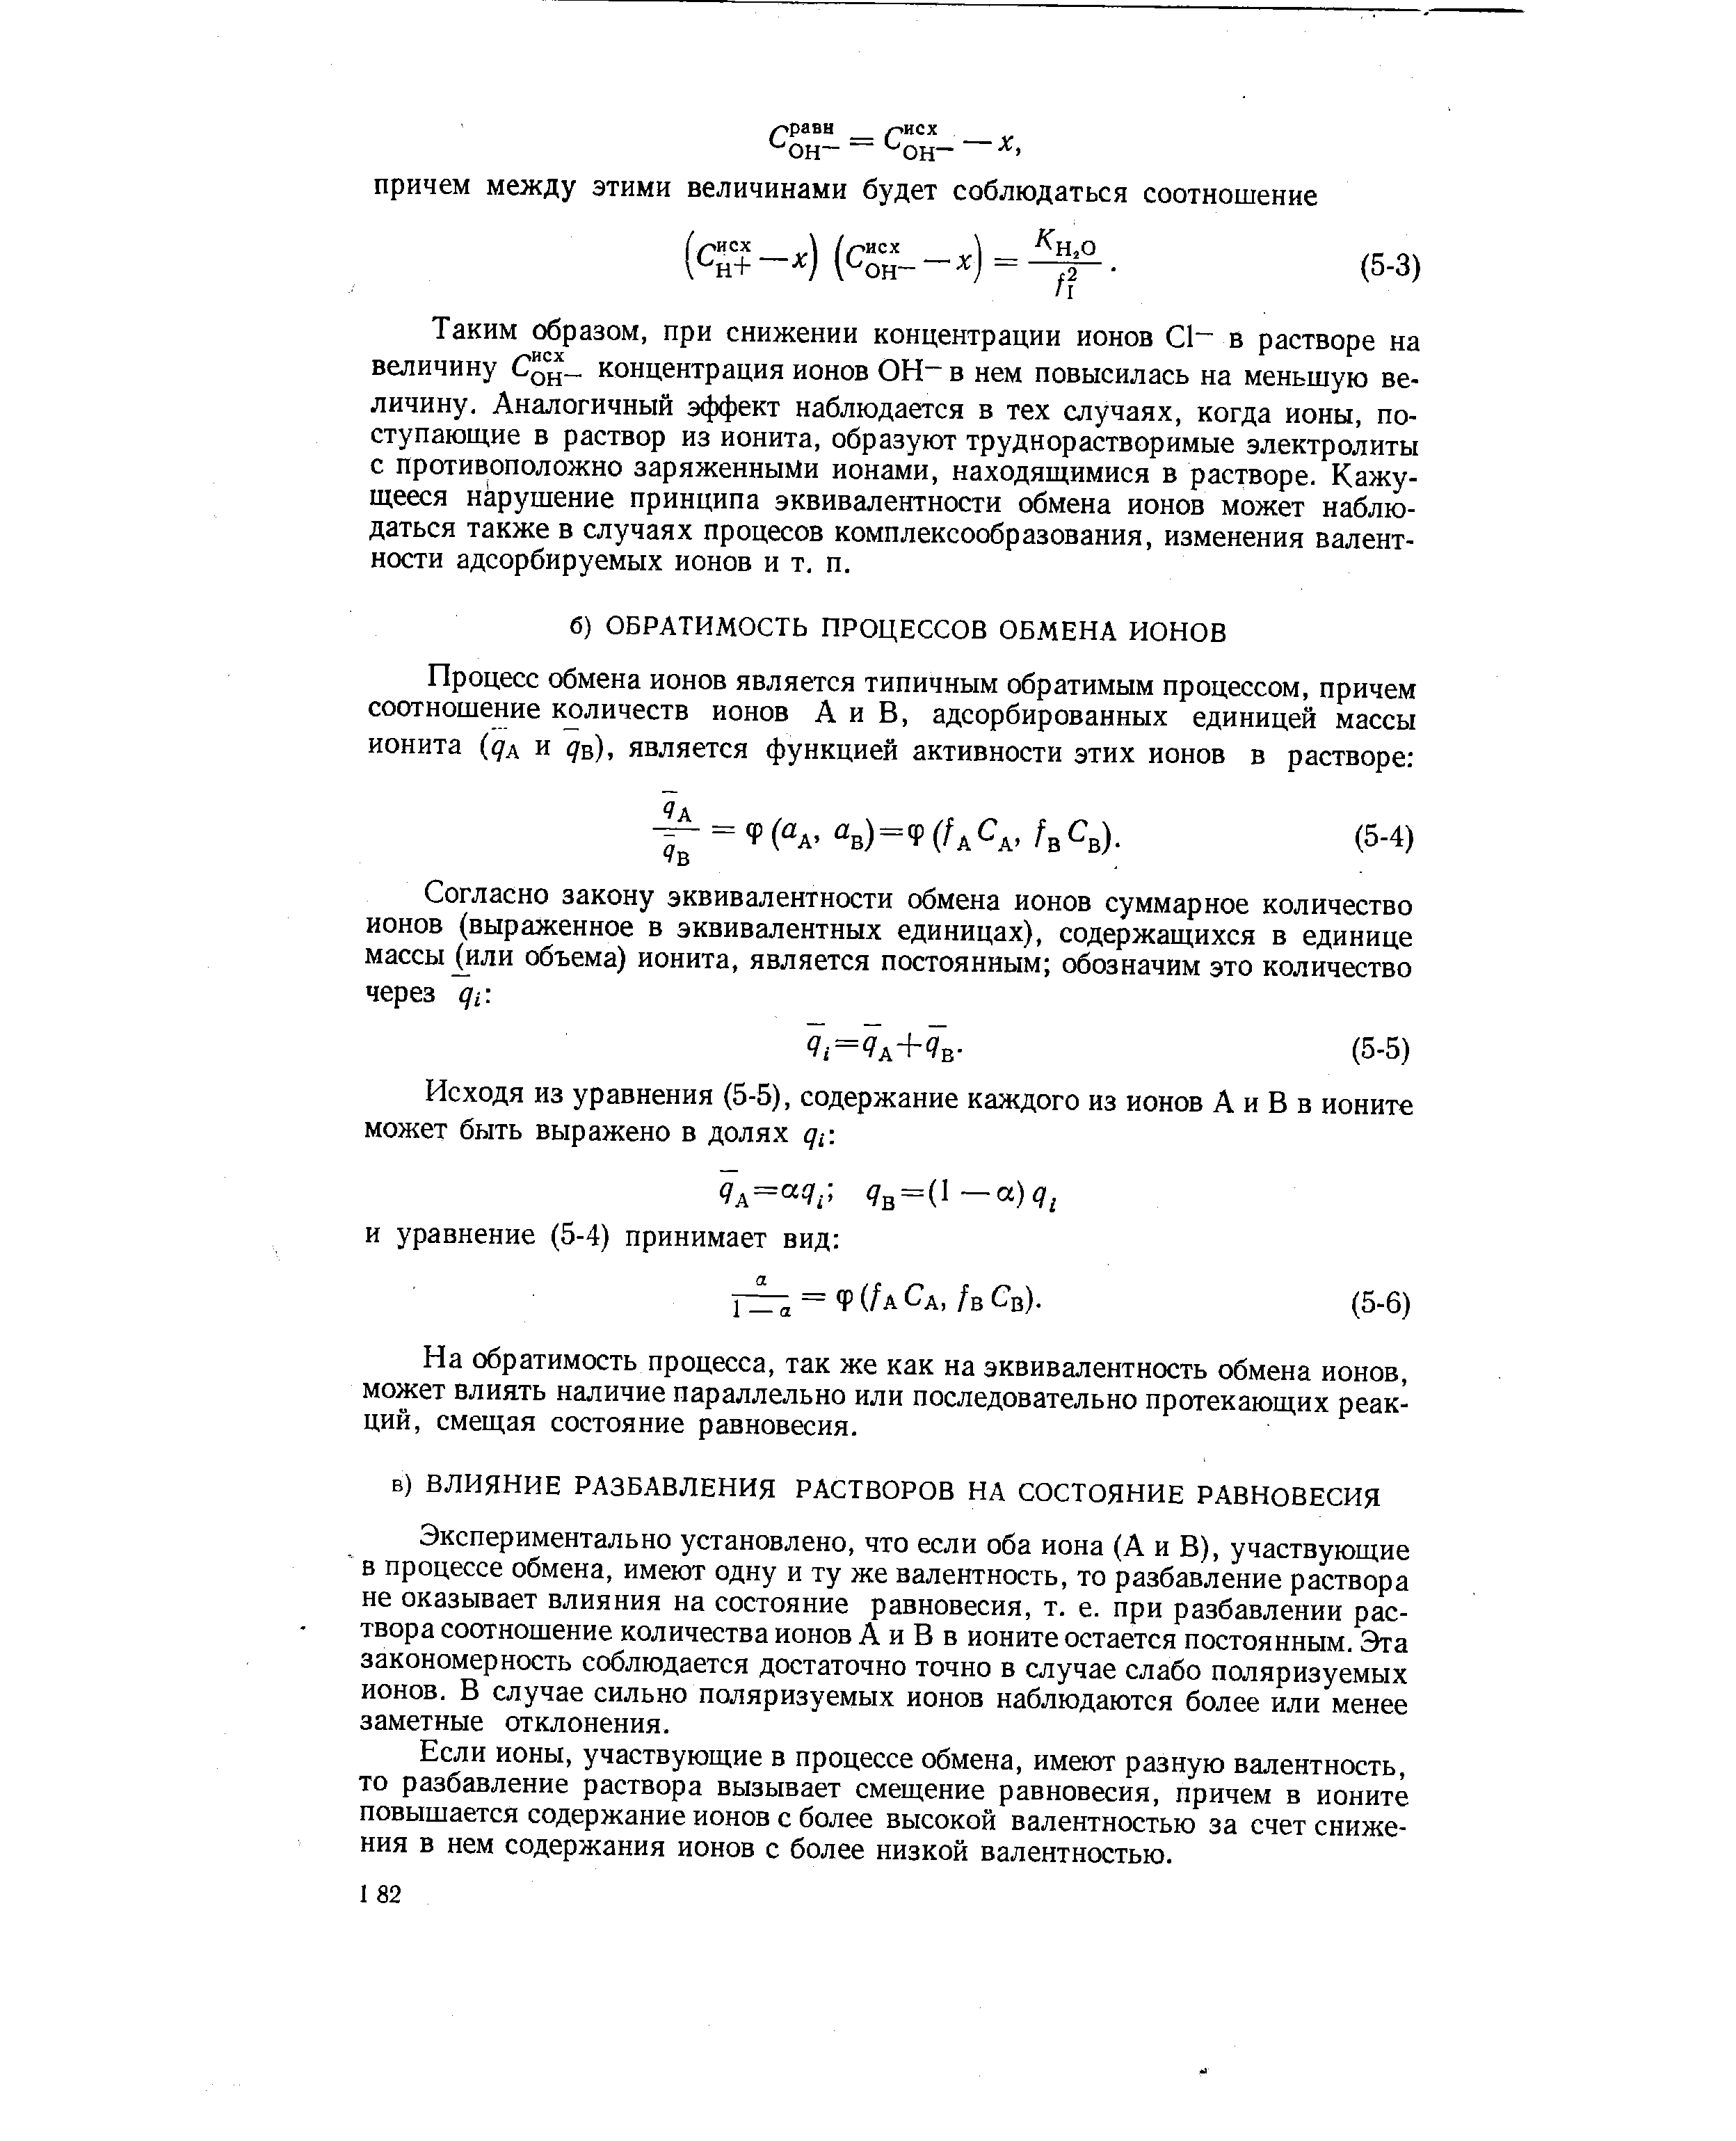 Исходя из уравнения (5-5), содержание каждого из ионов А и В в ионите может быть выражено в долях дг.
